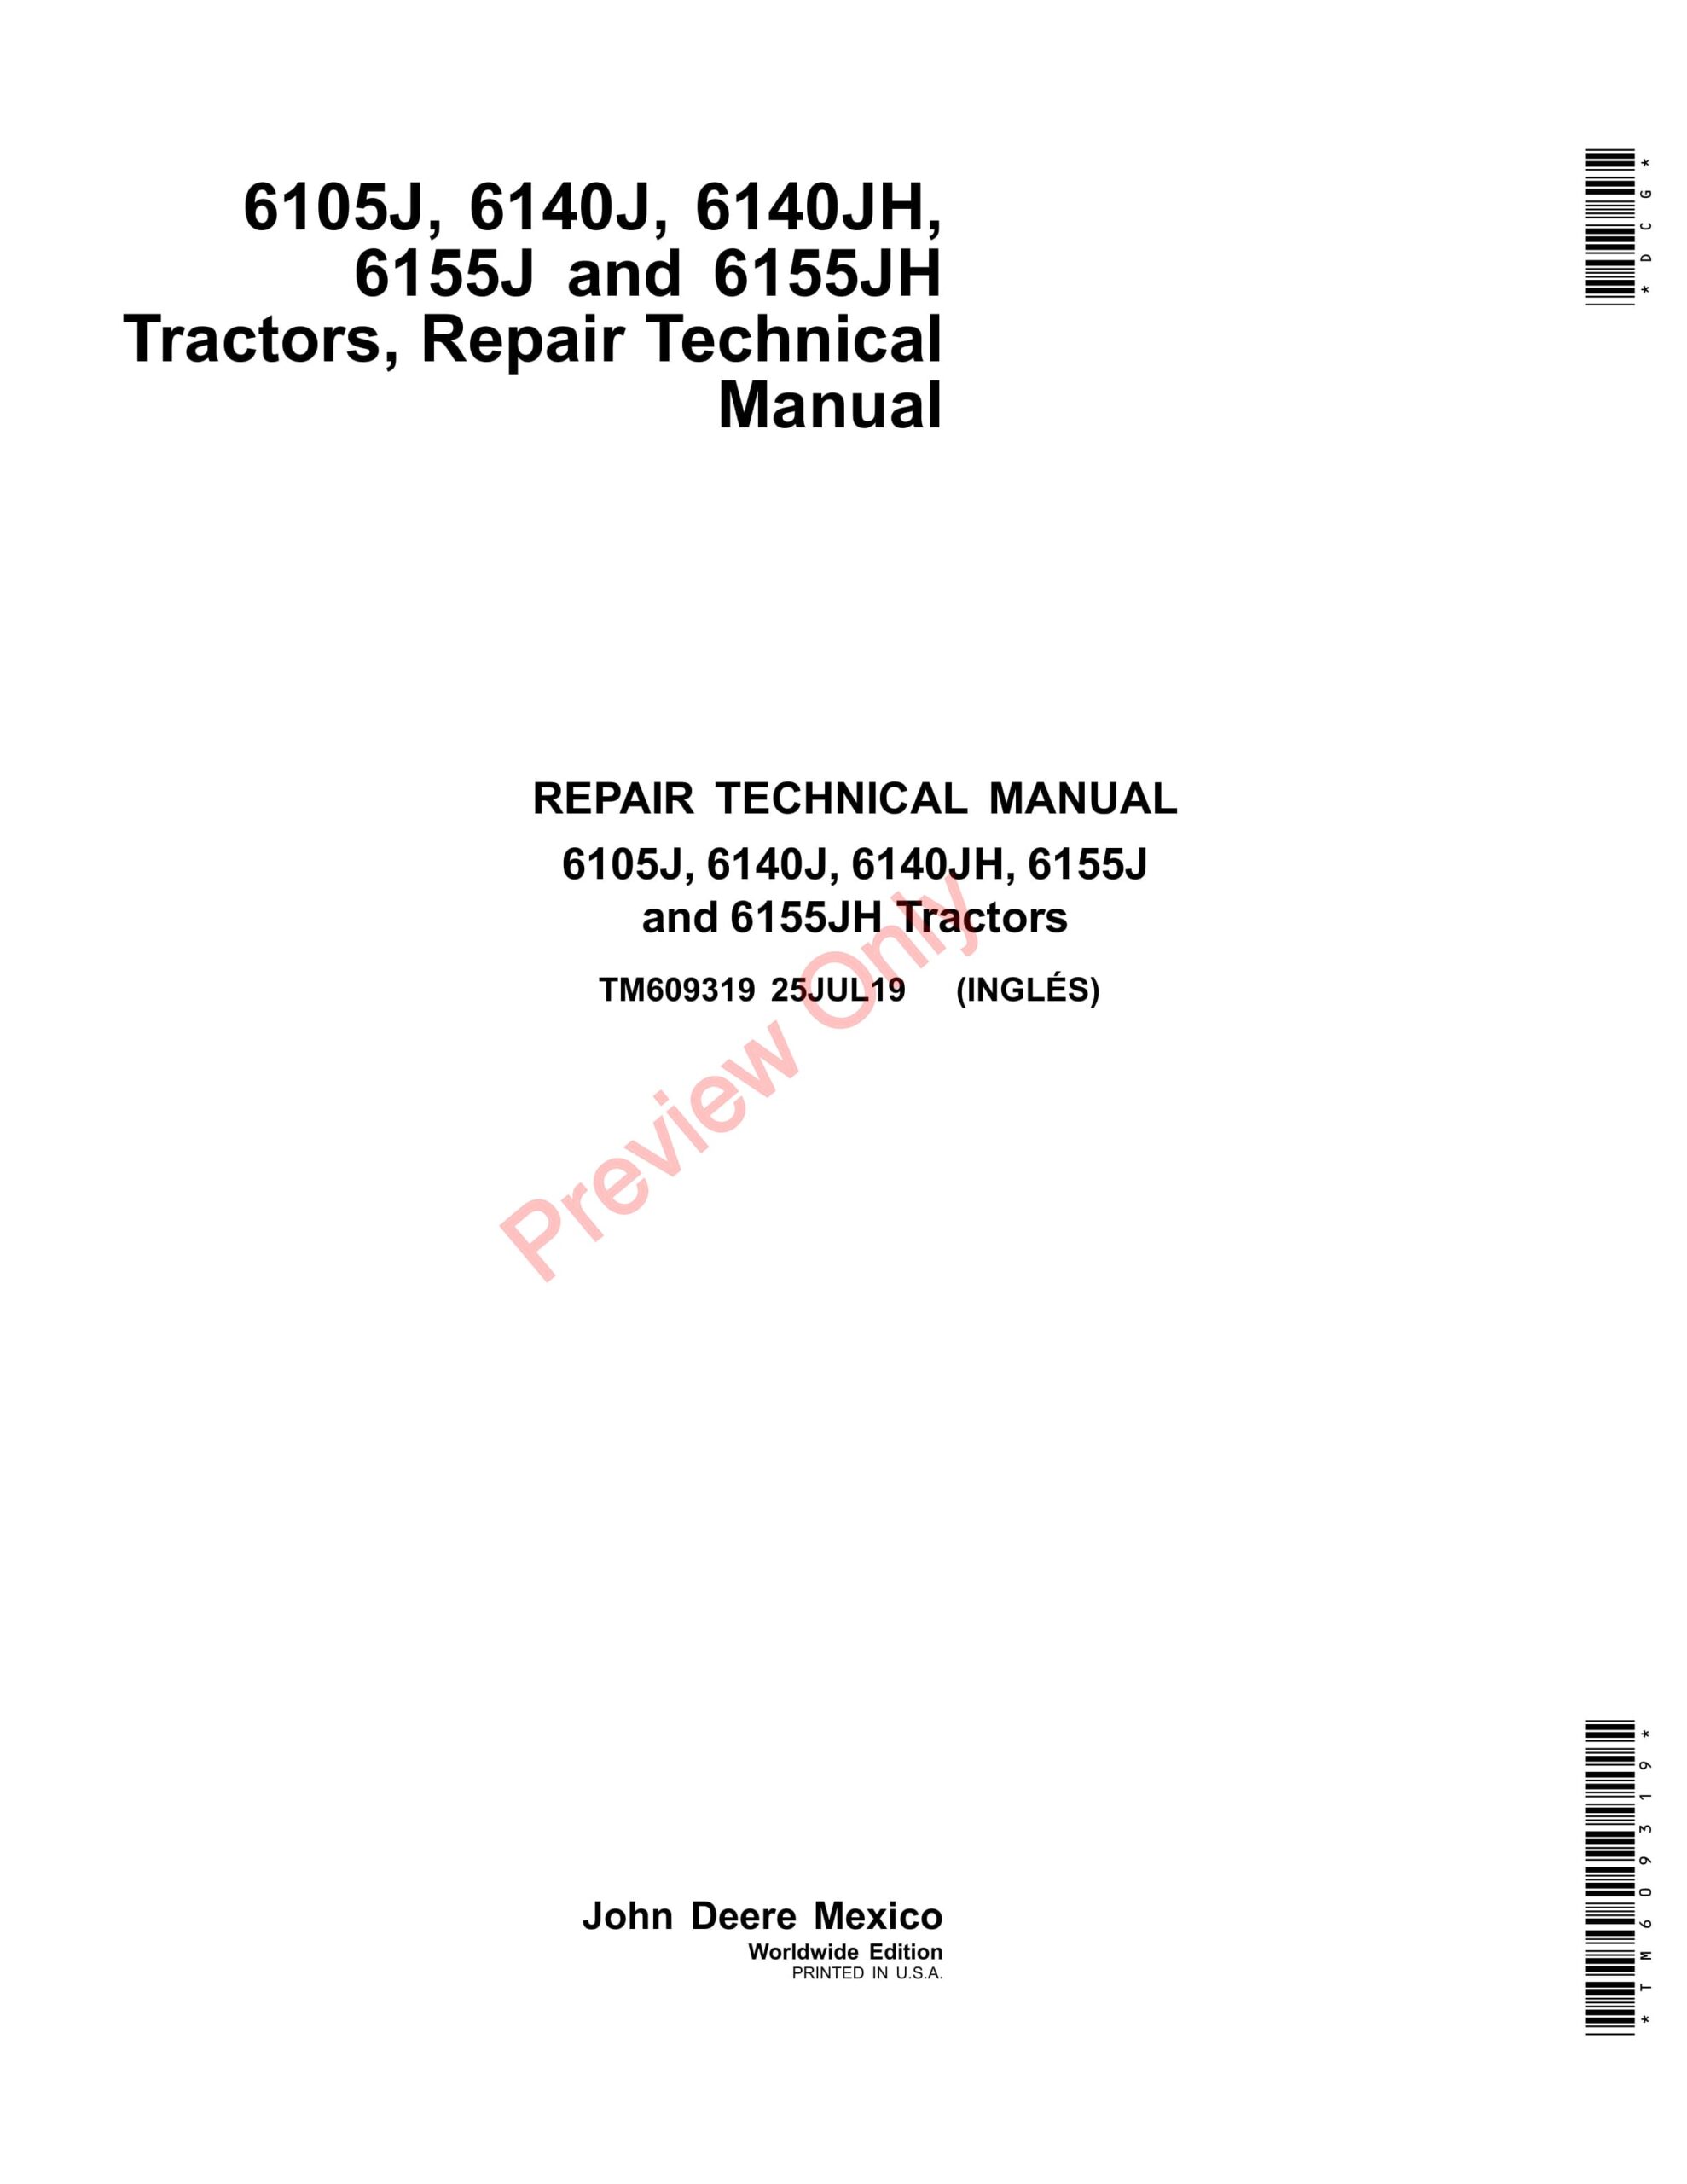 John Deere 6105J, 6140J, 6140JH, 6155J and 6155JH Tractors Repair Technical Manual TM609319 25JUL19-1